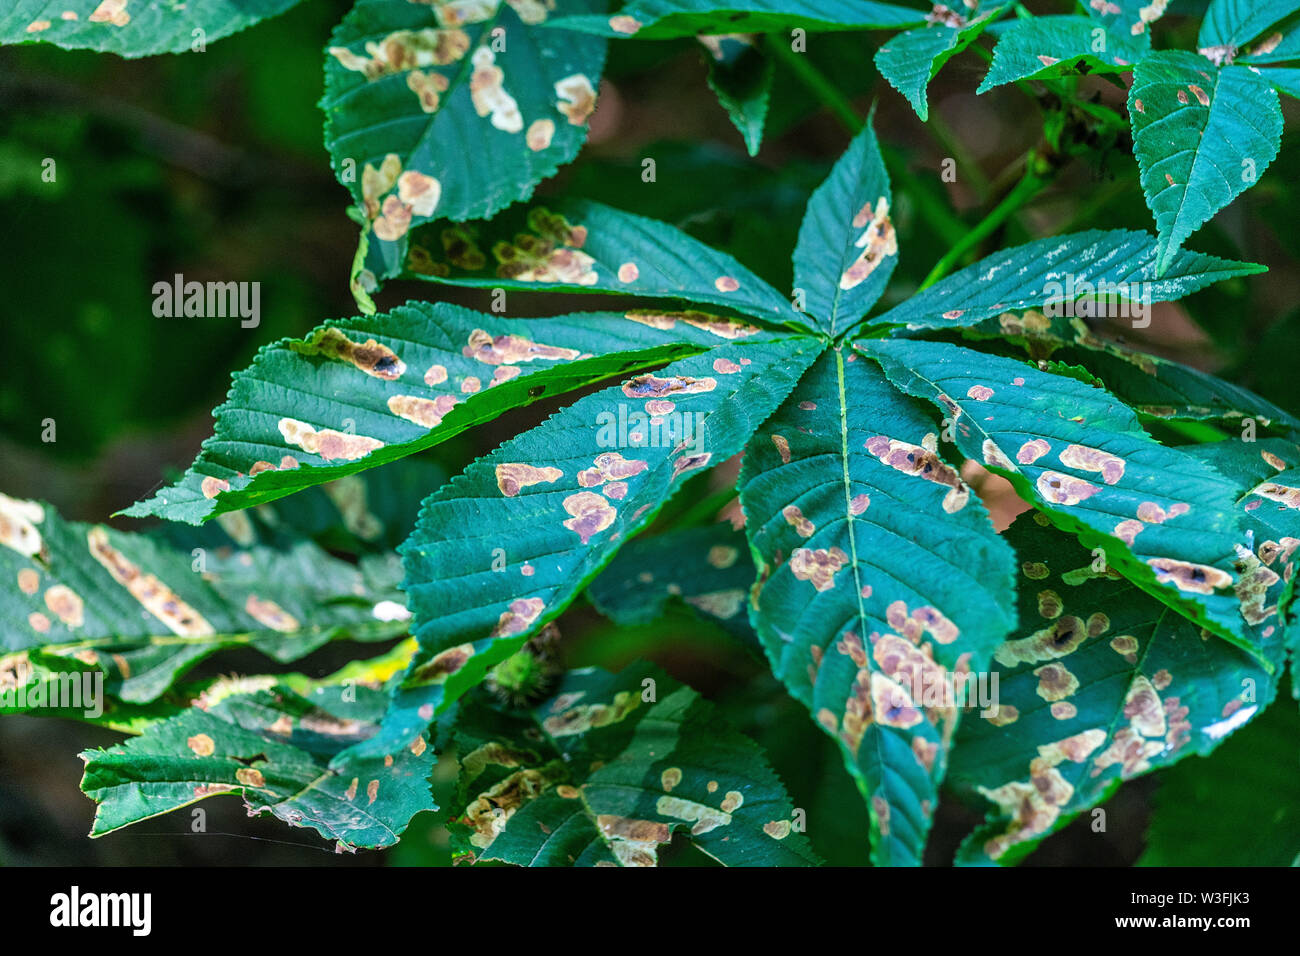 Horse Chestnut Tree feuilles, autrement connu comme l'arbre de conker. Les feuilles sont malades avec un champignon qui provoque des taches brunes apparaissent. Banque D'Images